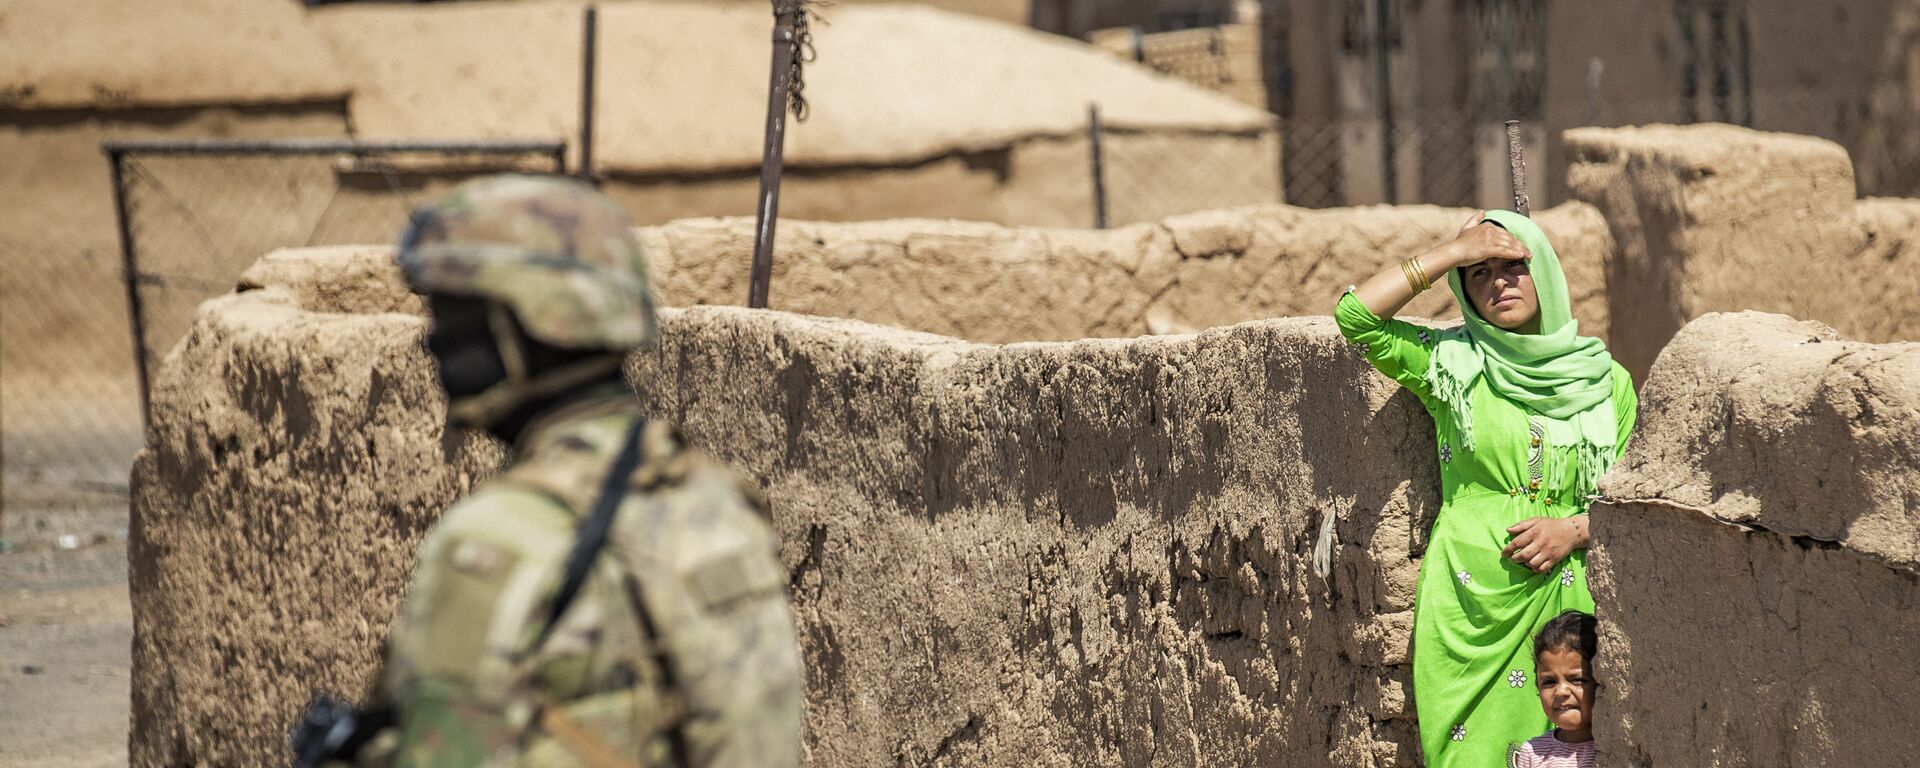   امرأة وطفل ينظران إلى جندي أمريكي يقف خلال دورية عسكرية أمريكية في الرميلان، في محافظة الحسكة شمال شرق سوريا، 22 يونيو 2021 - سبوتنيك عربي, 1920, 17.11.2021